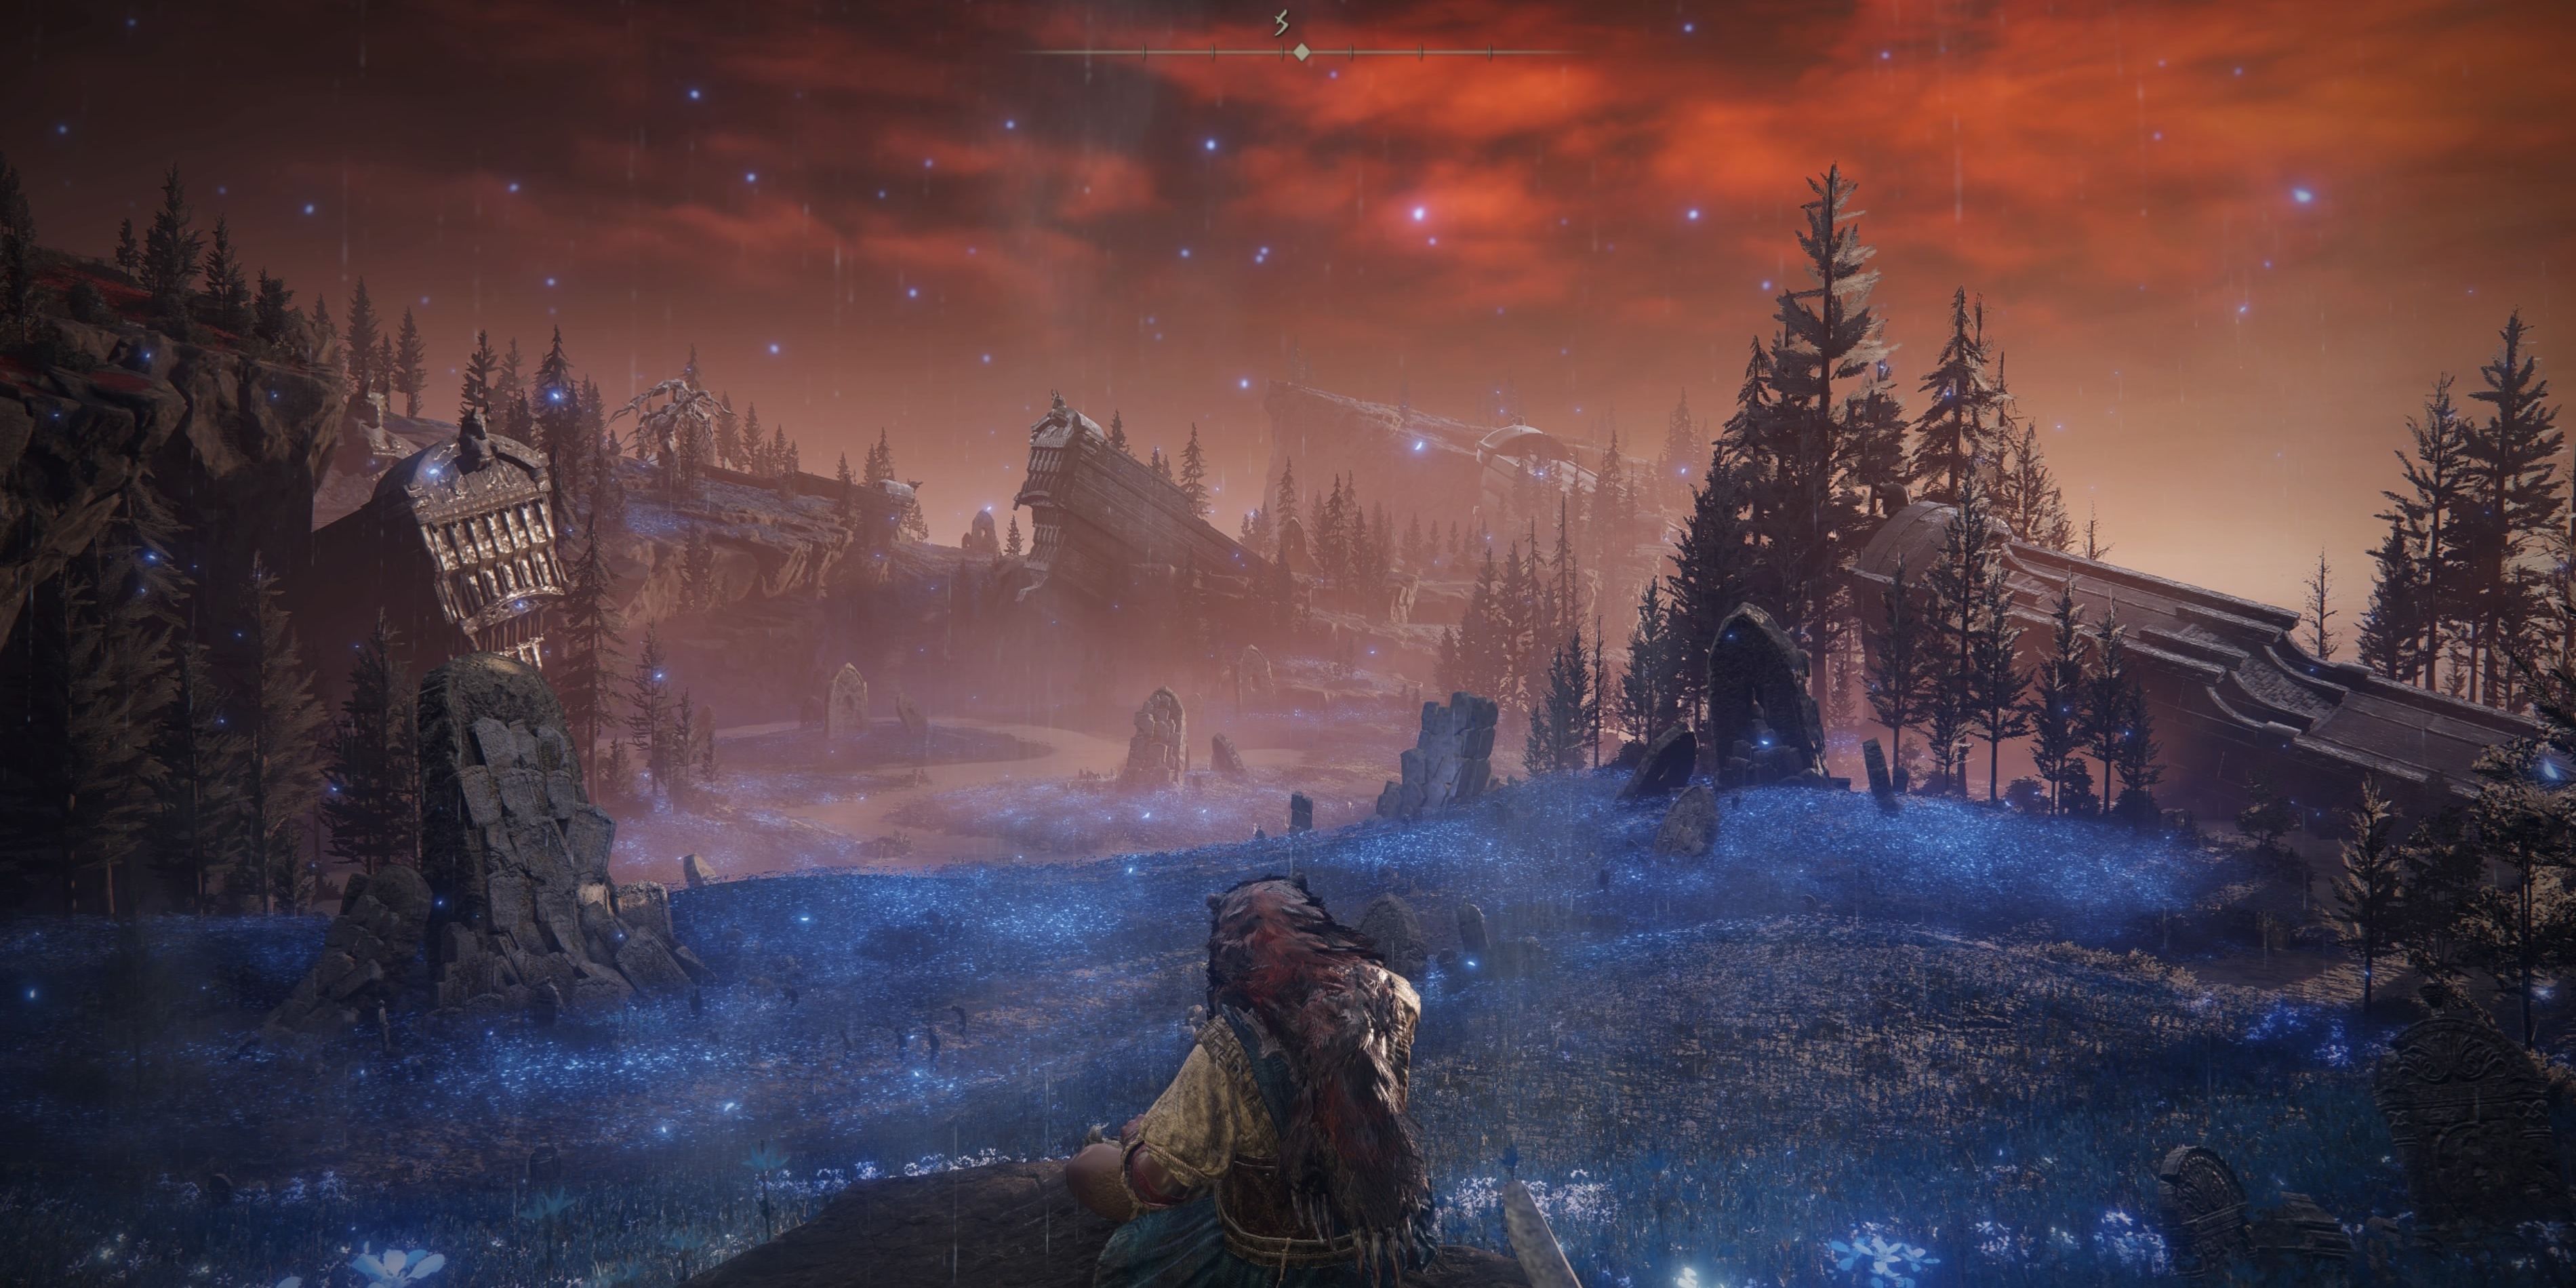 O jogador de Elden Ring está sentado em uma pedra com vista para uma planície ondulada de flores azuis brilhantes. Há caixões gigantes projetando-se da paisagem.